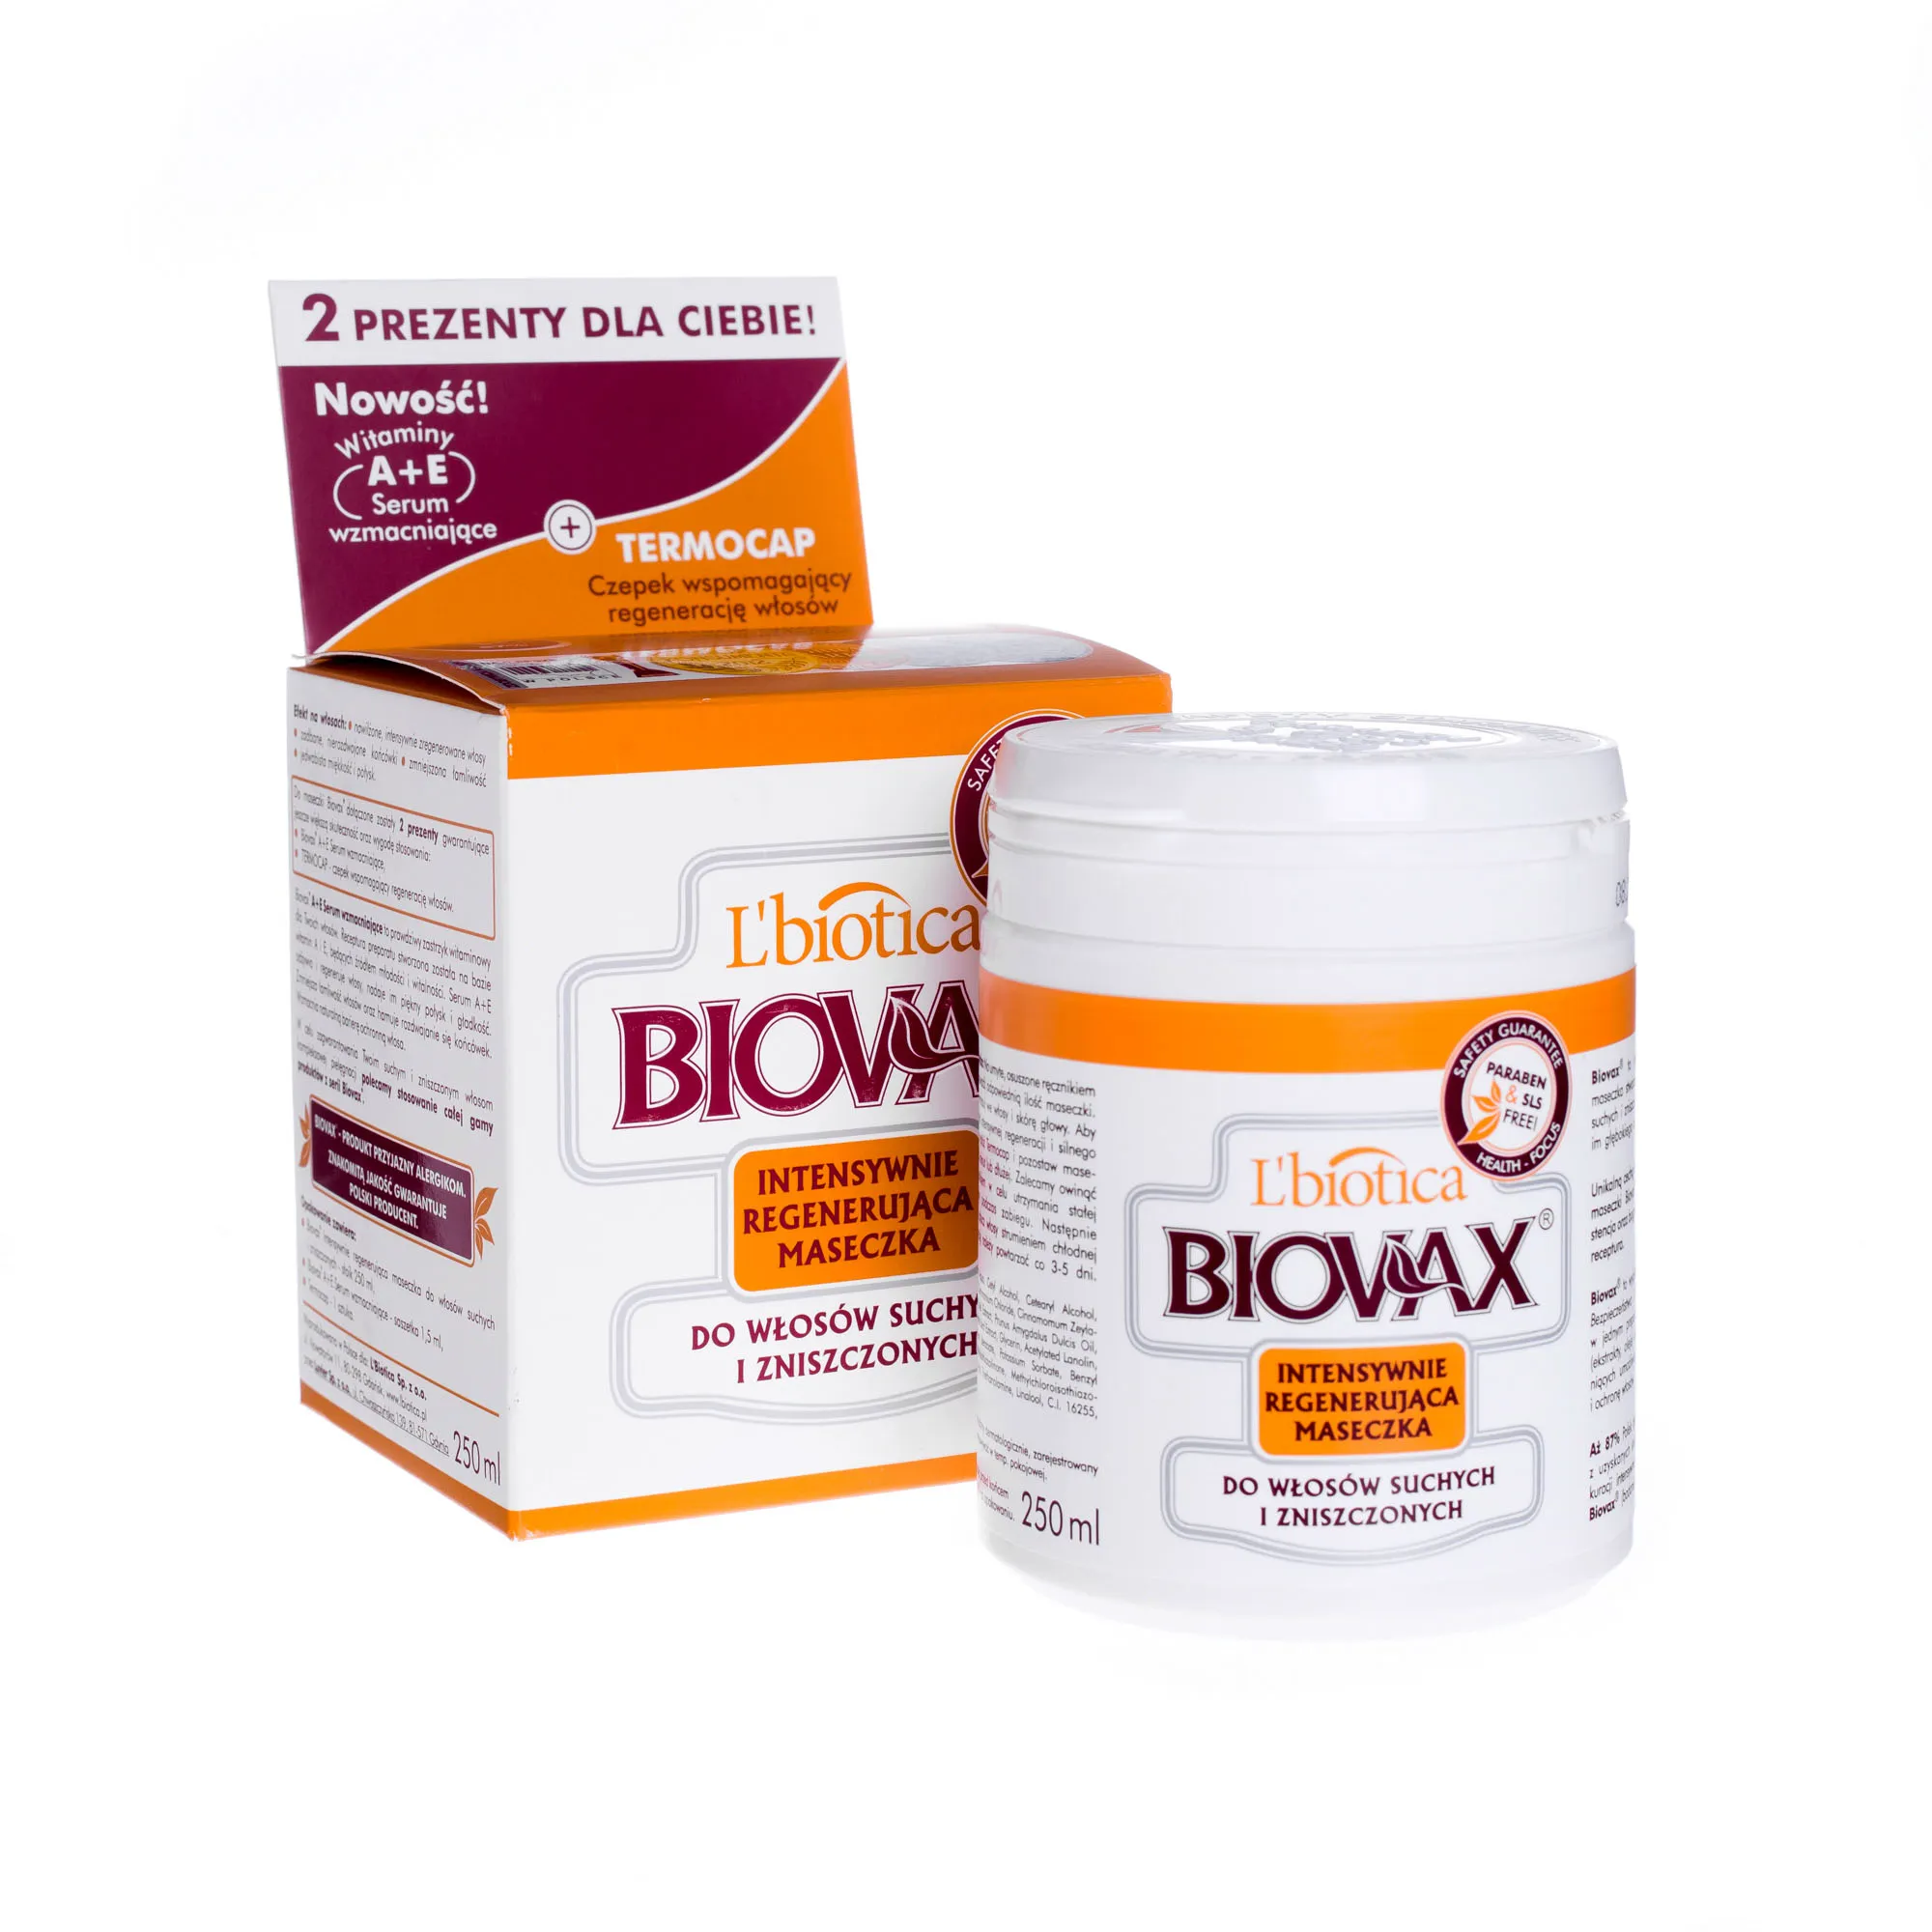 L'biotica Biovax, Intensywnie regenerująca maseczka do włosów suchych i zniszczonych, 250 ml 